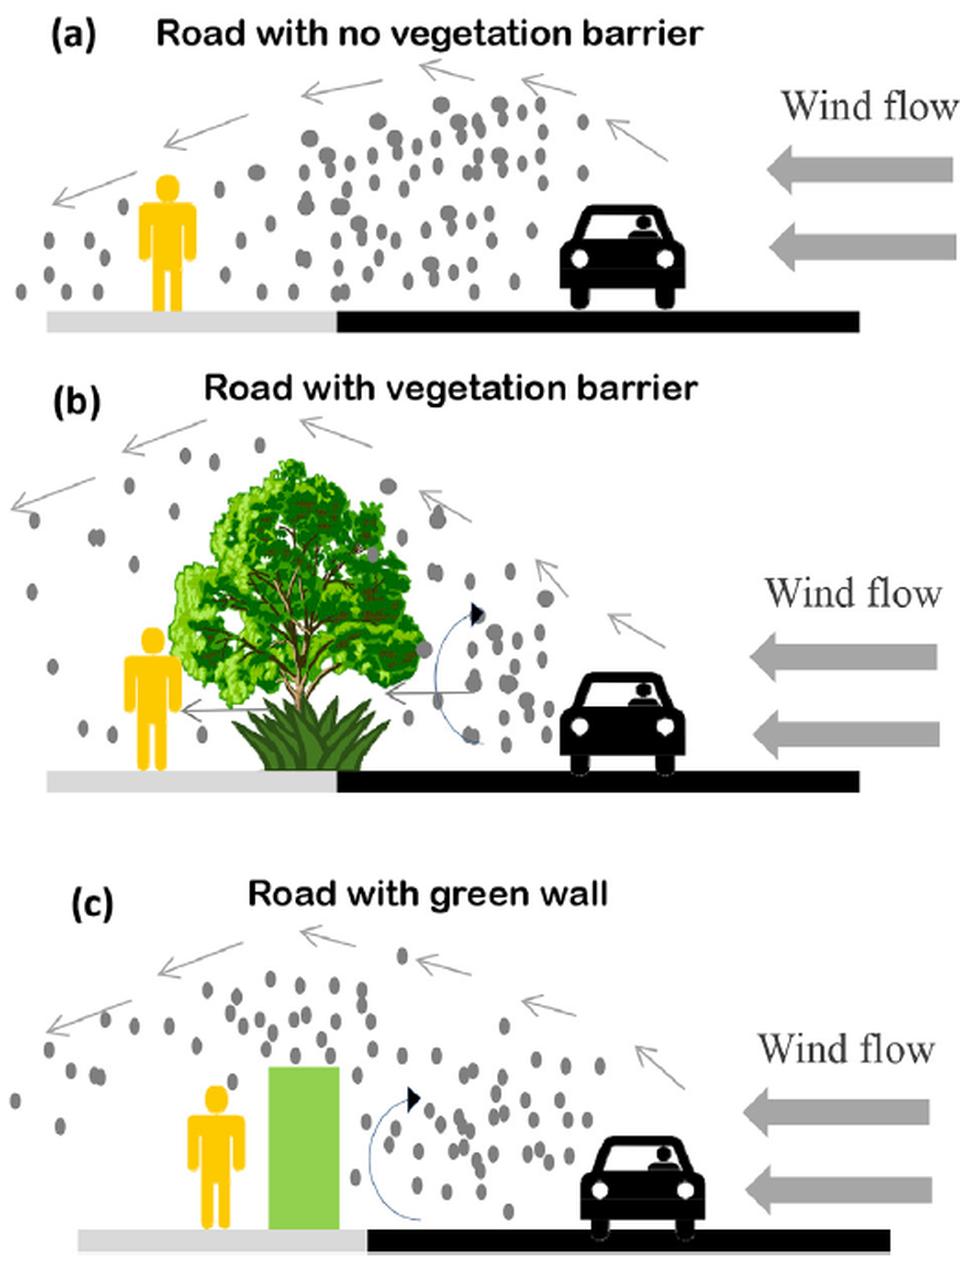 7. ábra: Légszennyezők terjedése nyílt tereken növényzet nélkül (a), növényzettel (b) és zöldfal esetén (c). Forrás: Abhijith et al., 2017